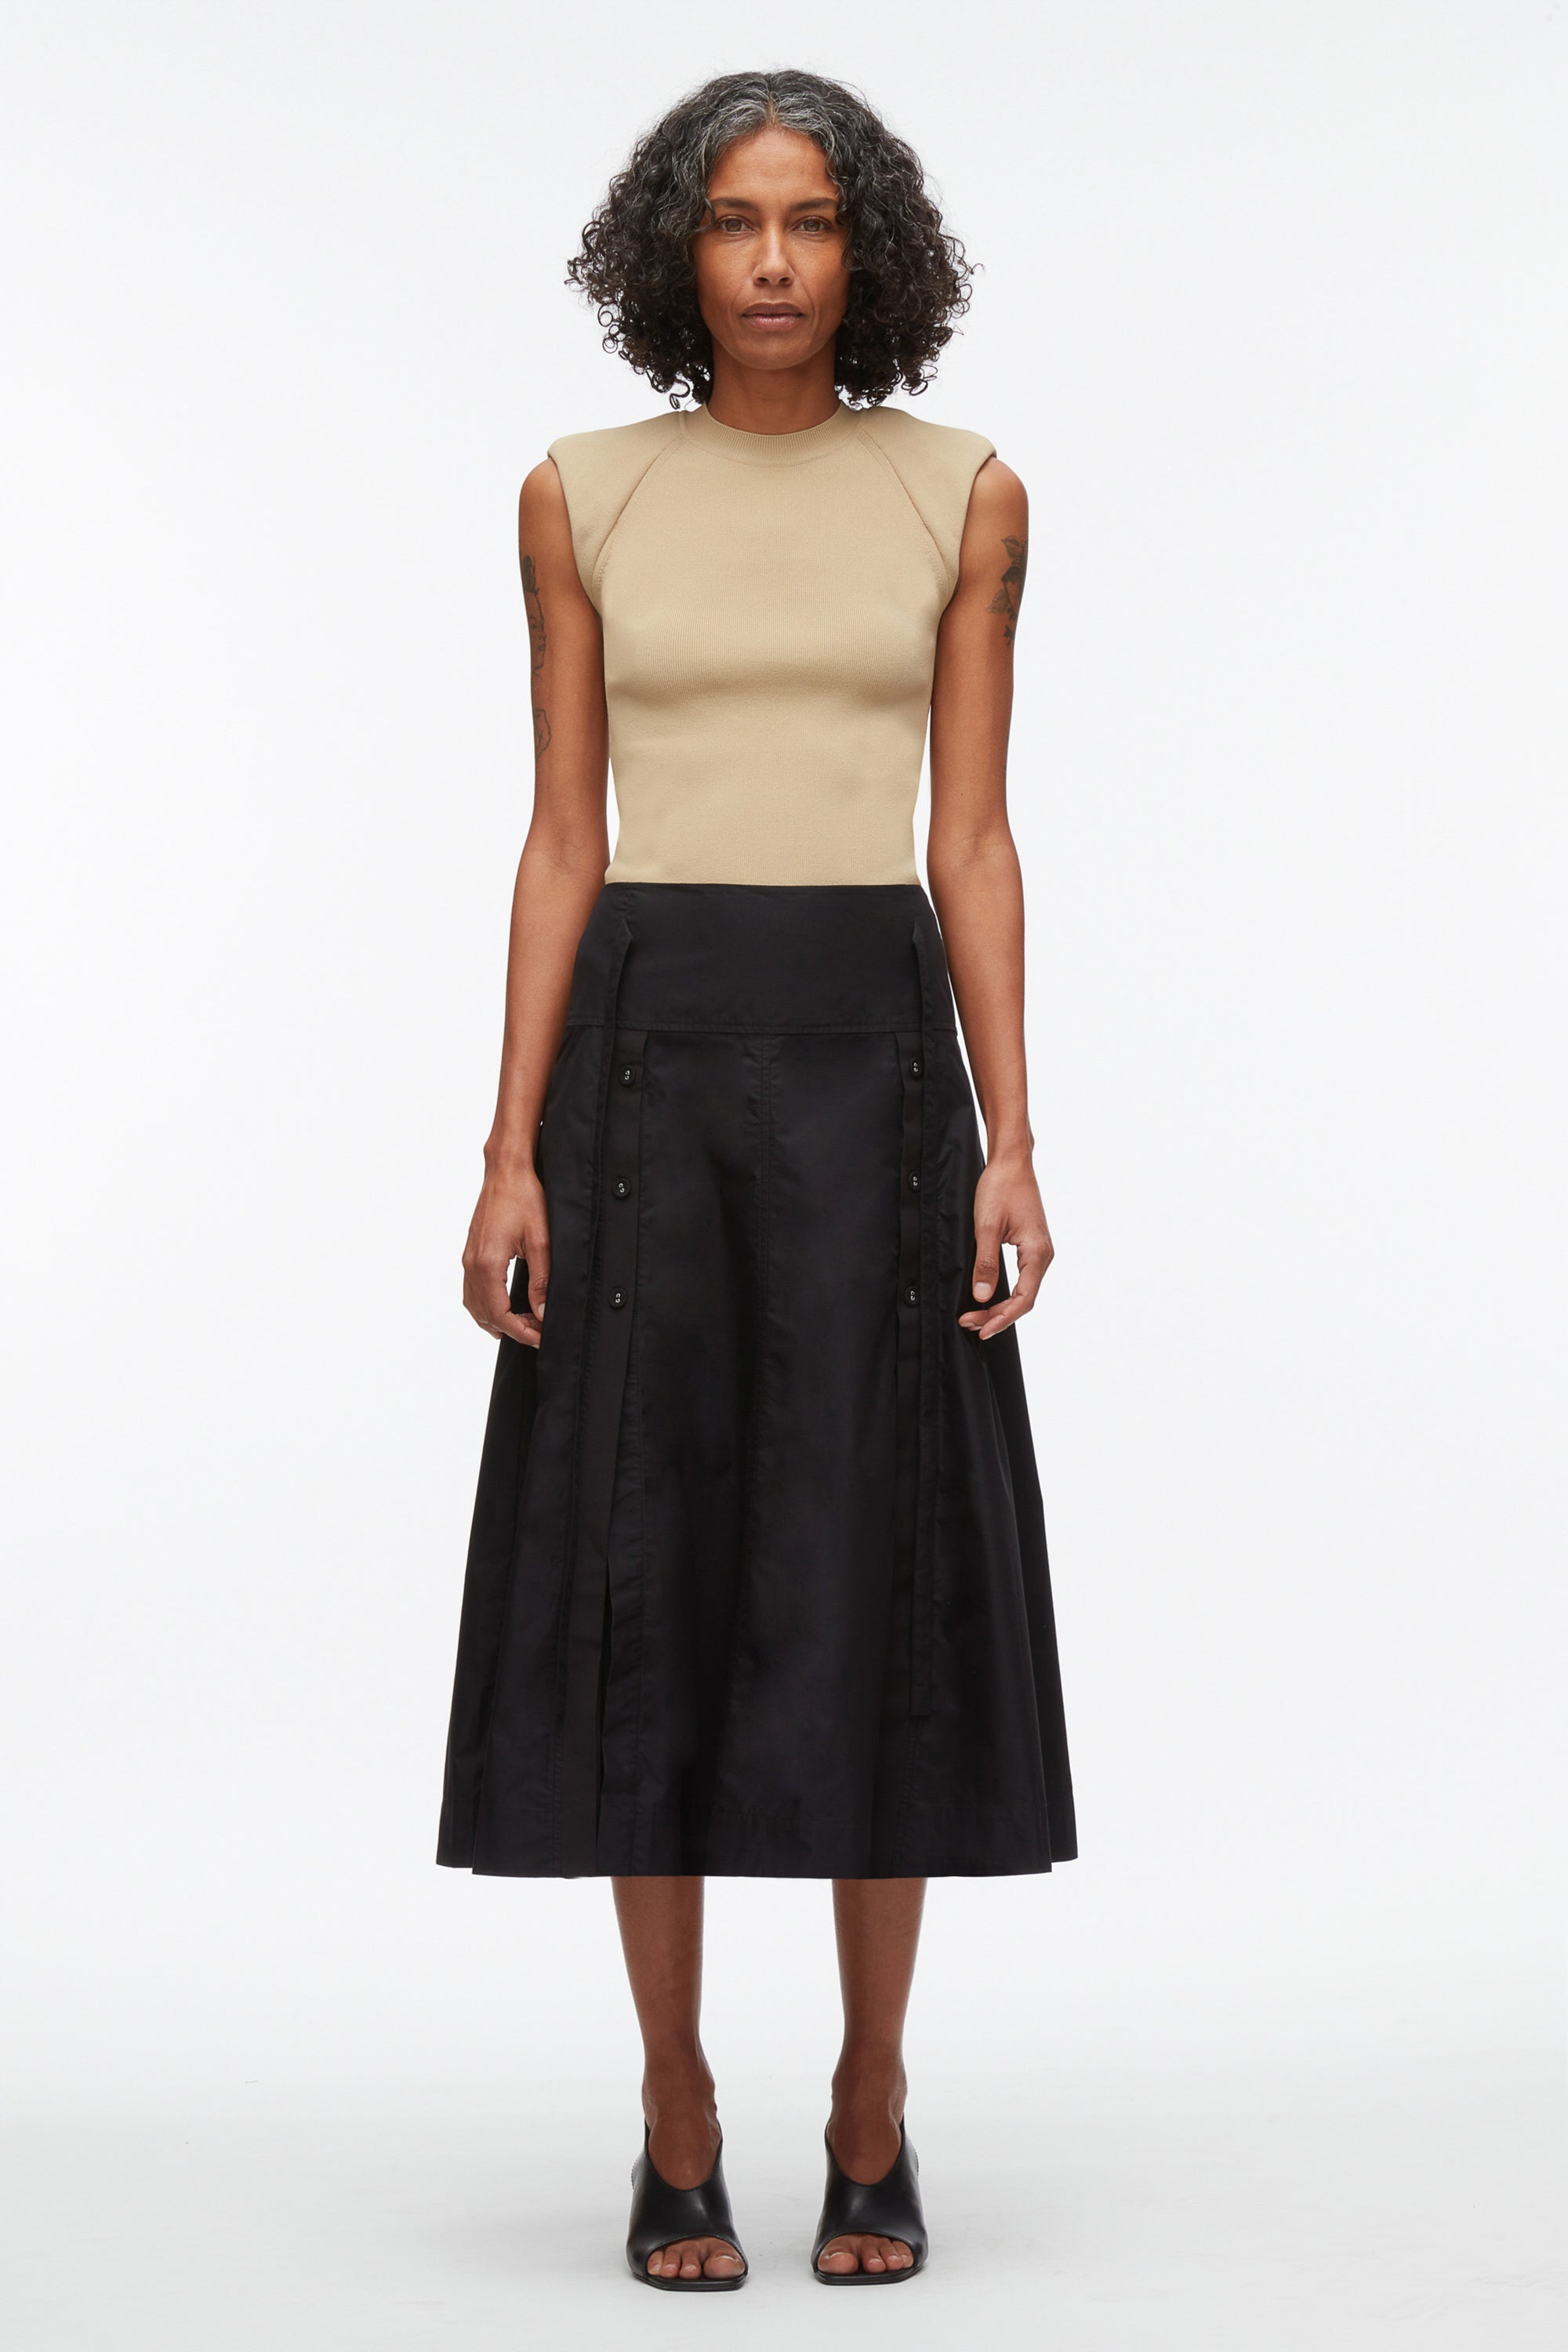 Women's Designer Skirts | 3.1 Phillip Lim